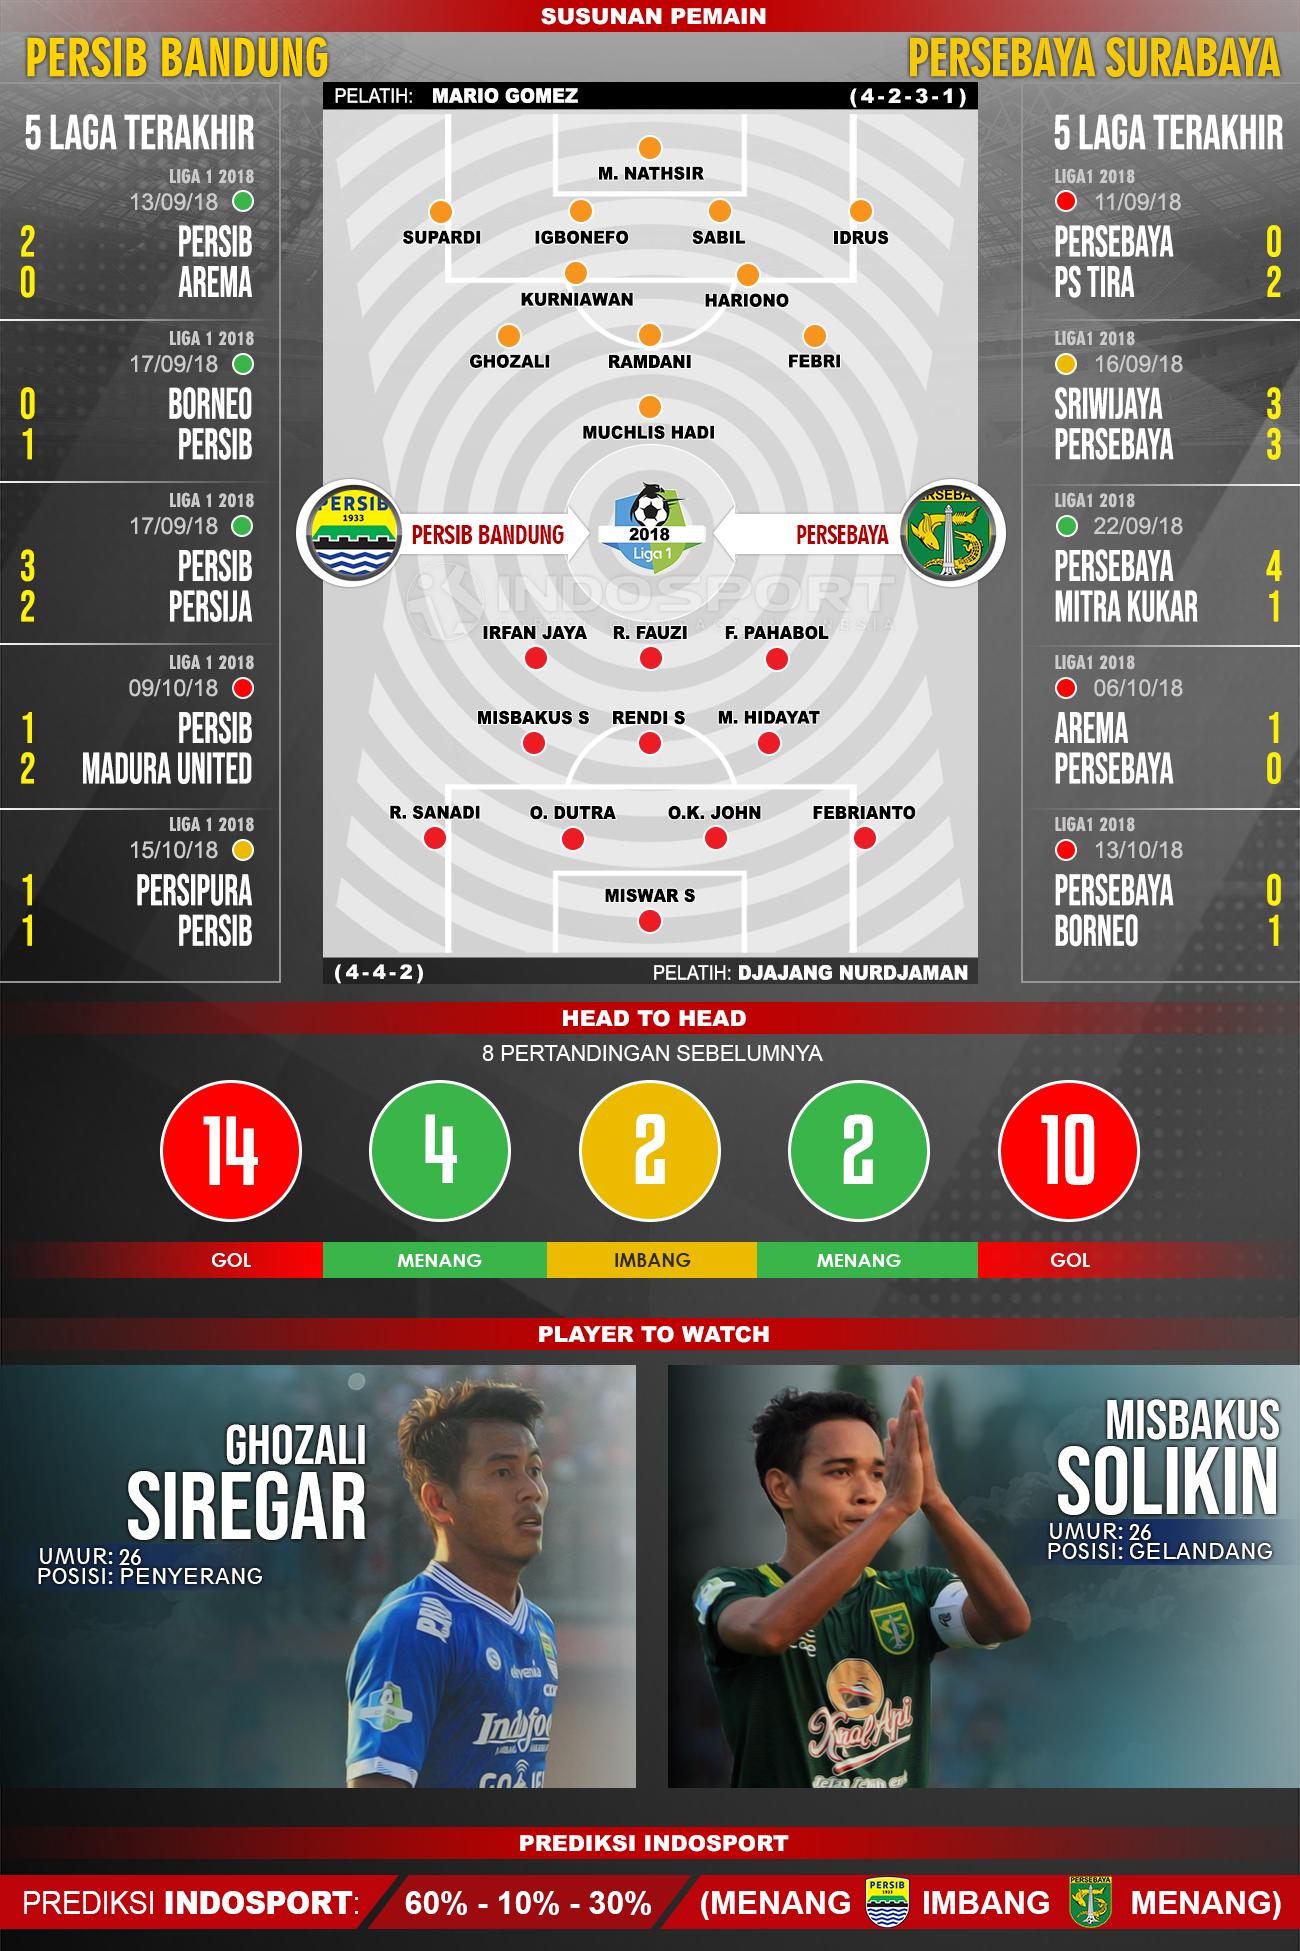 Persib Bandung vs Persebaya Surabaya (Susunan Pemain - Lima Laga Terakhir - Player to Watch - Prediksi Indosport) Copyright: INDOSPORT